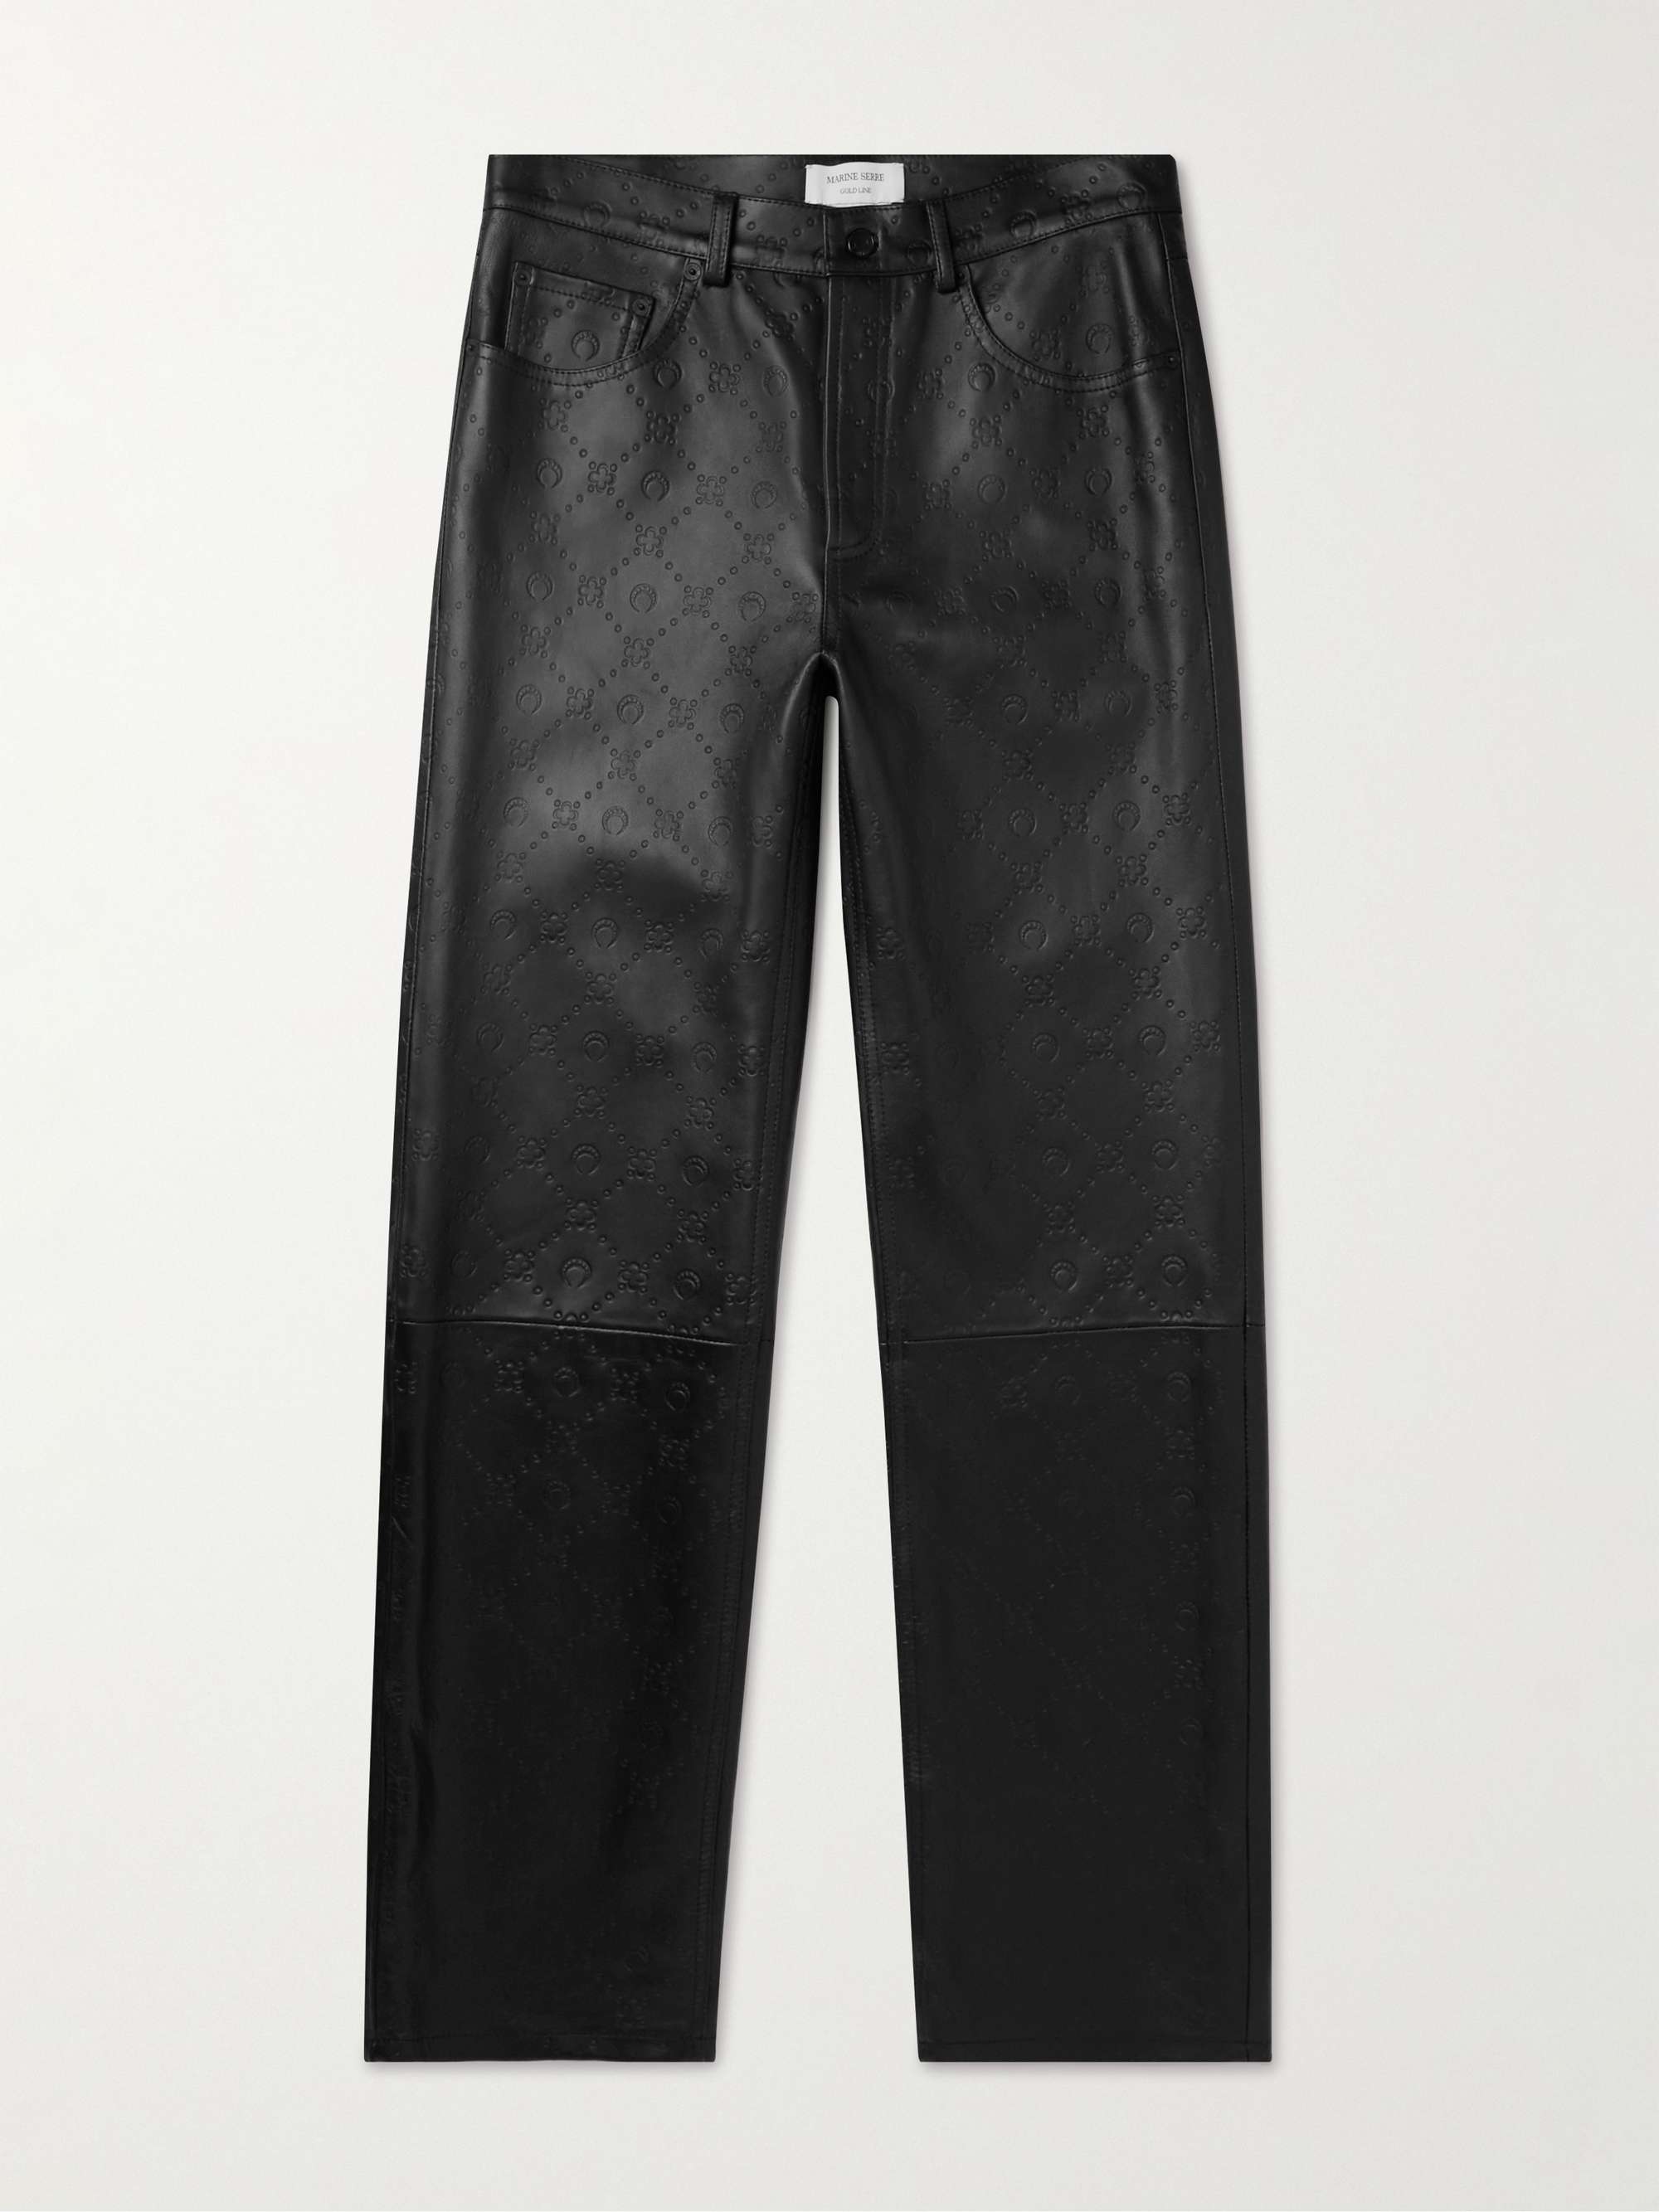 MARINE SERRE Straight-Leg Debossed Leather Trousers for Men | MR PORTER